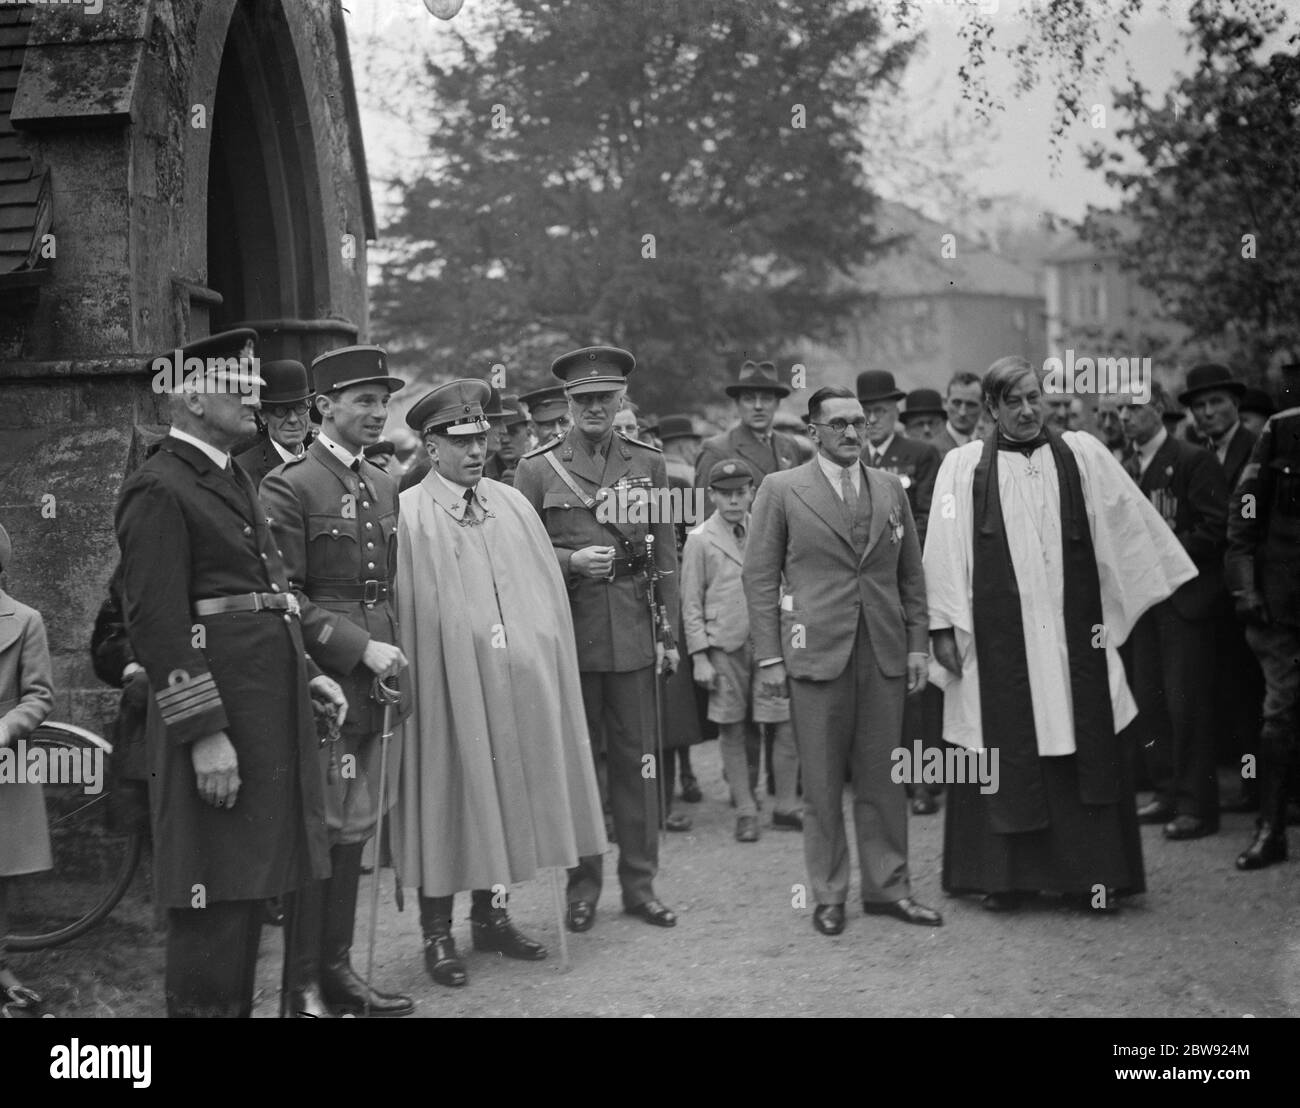 Le Reverend H Hall debout avec des représentants de l'armée britannique et étrangère après le service à Eltham pour se souvenir de ceux qui ont combattu dans la campagne de Gallipoli pendant la première Guerre mondiale . 23 avril 1938 Banque D'Images